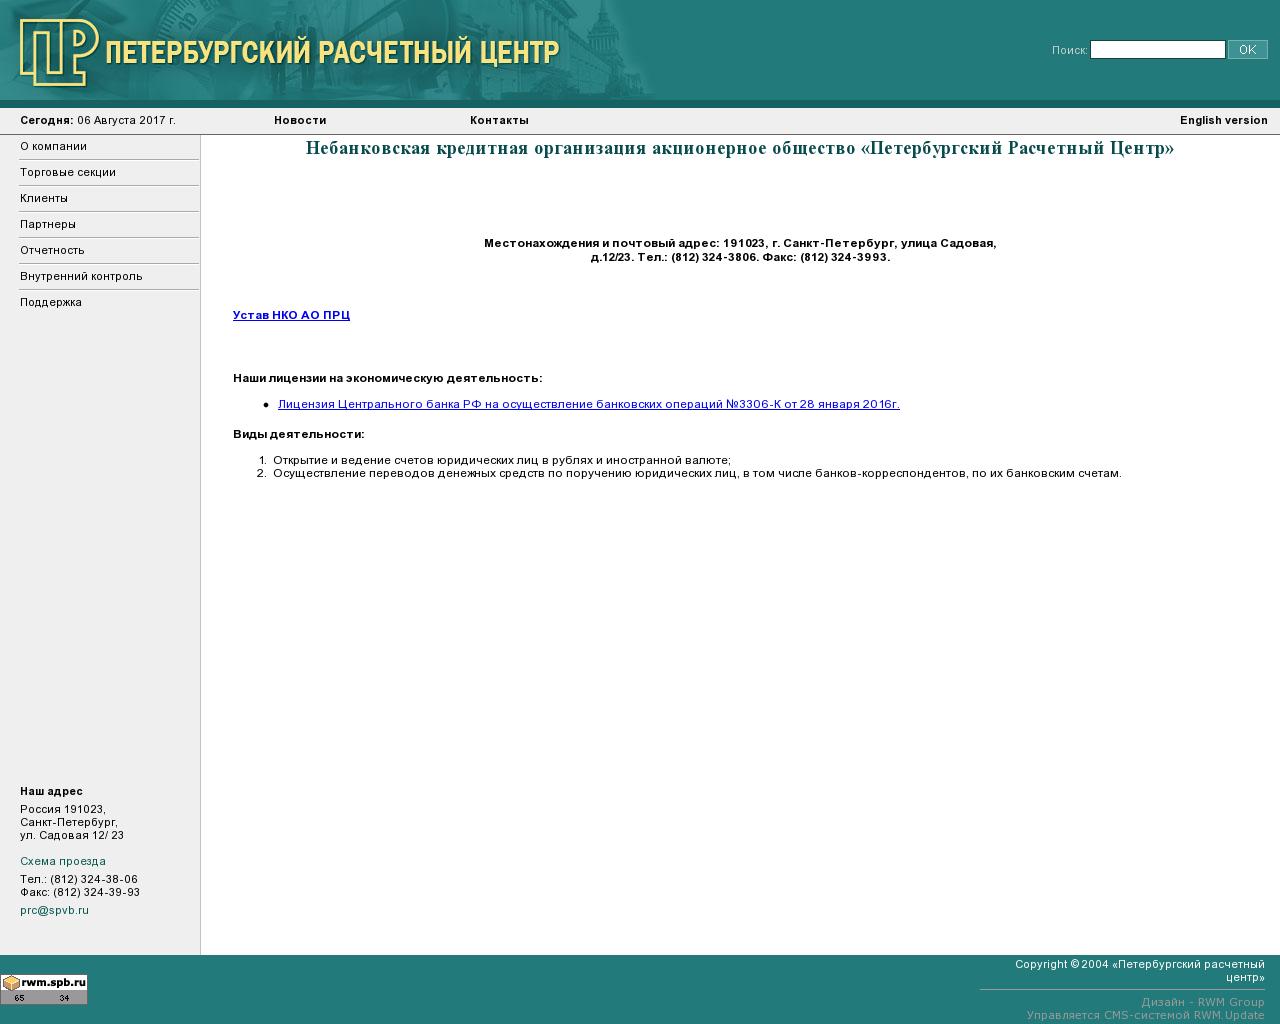 Изображение сайта spsc.ru в разрешении 1280x1024